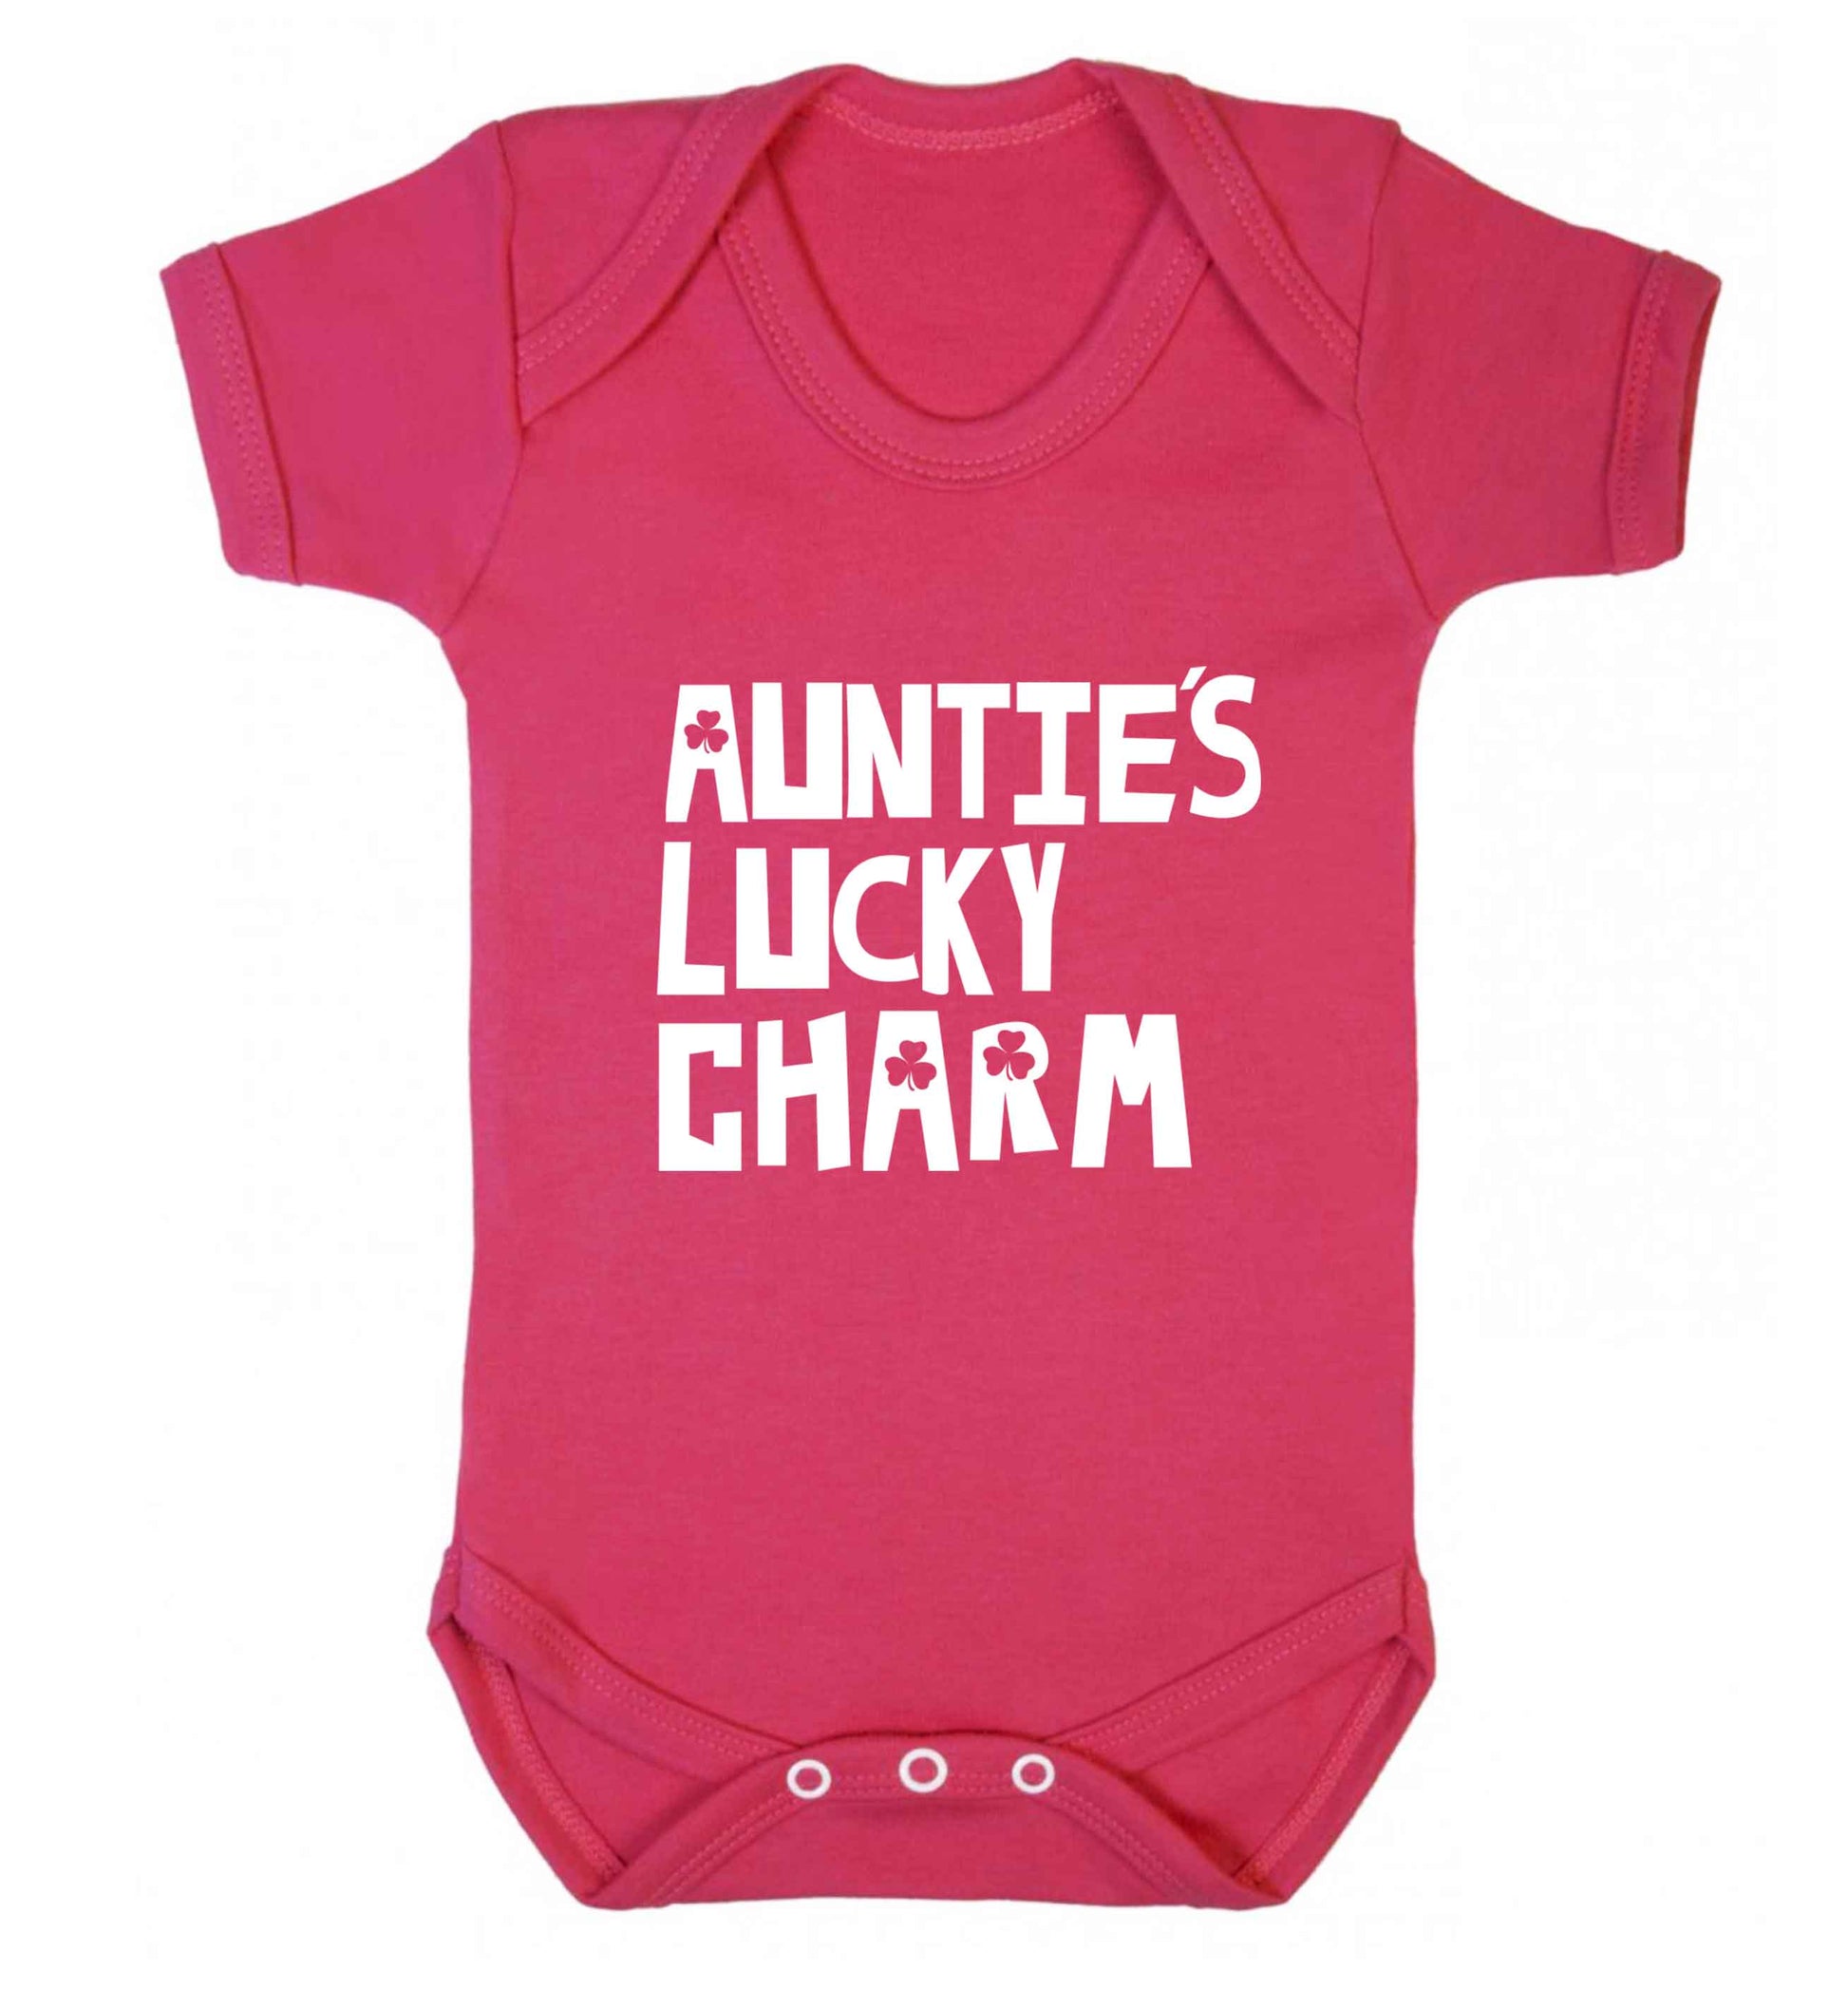 Auntie's lucky charm baby vest dark pink 18-24 months